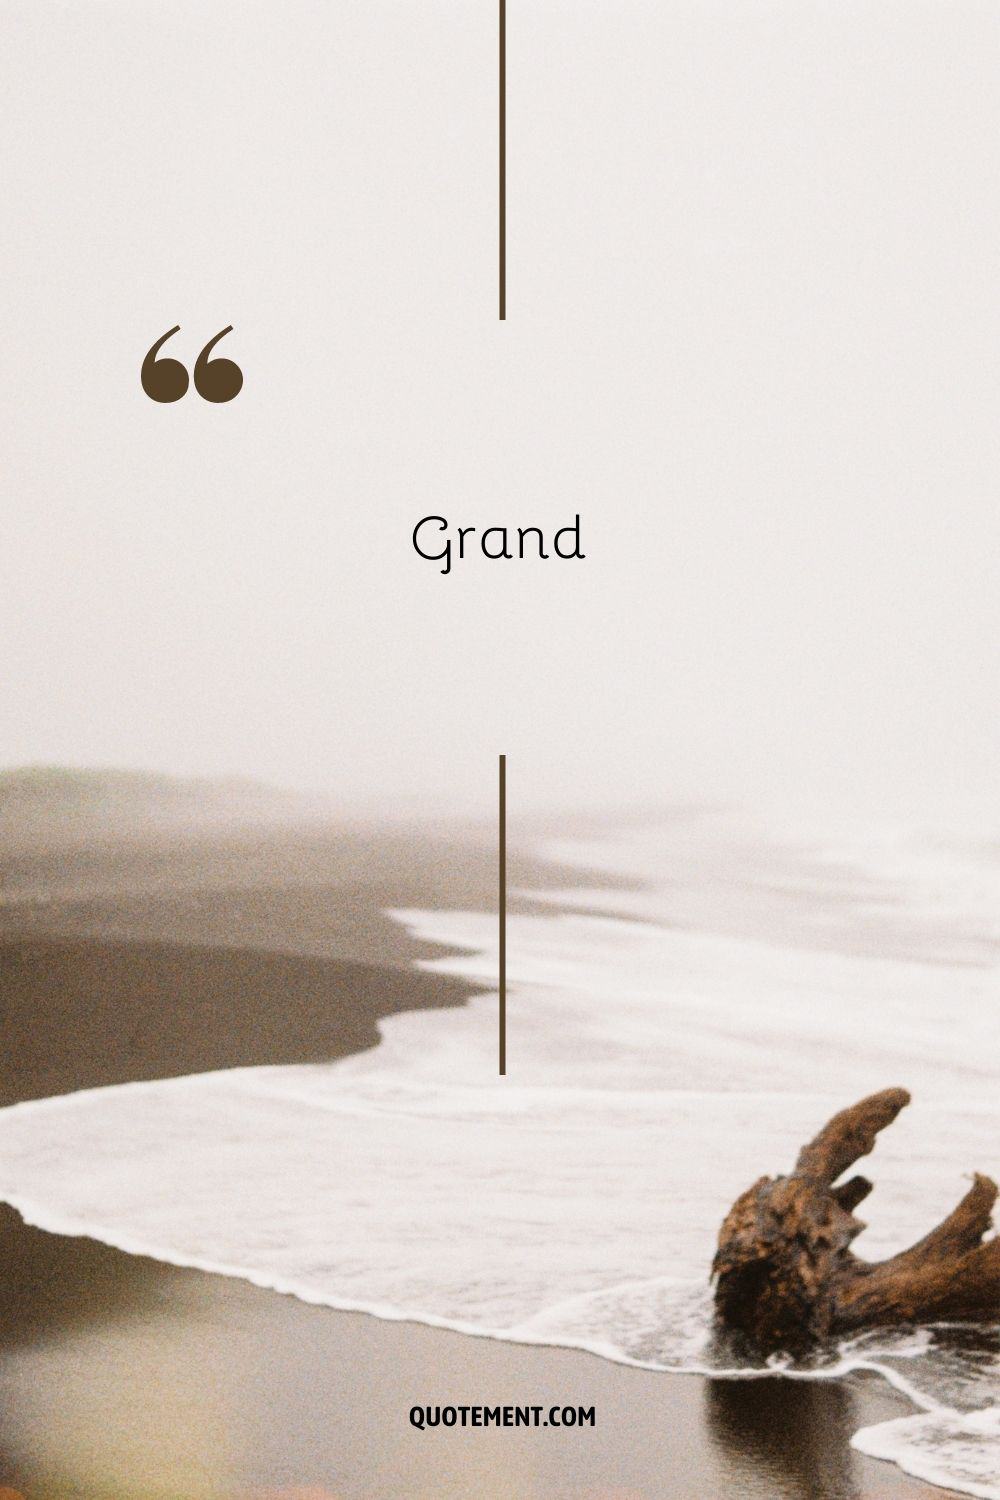 playa de arena que representa una palabra positiva que empieza por g